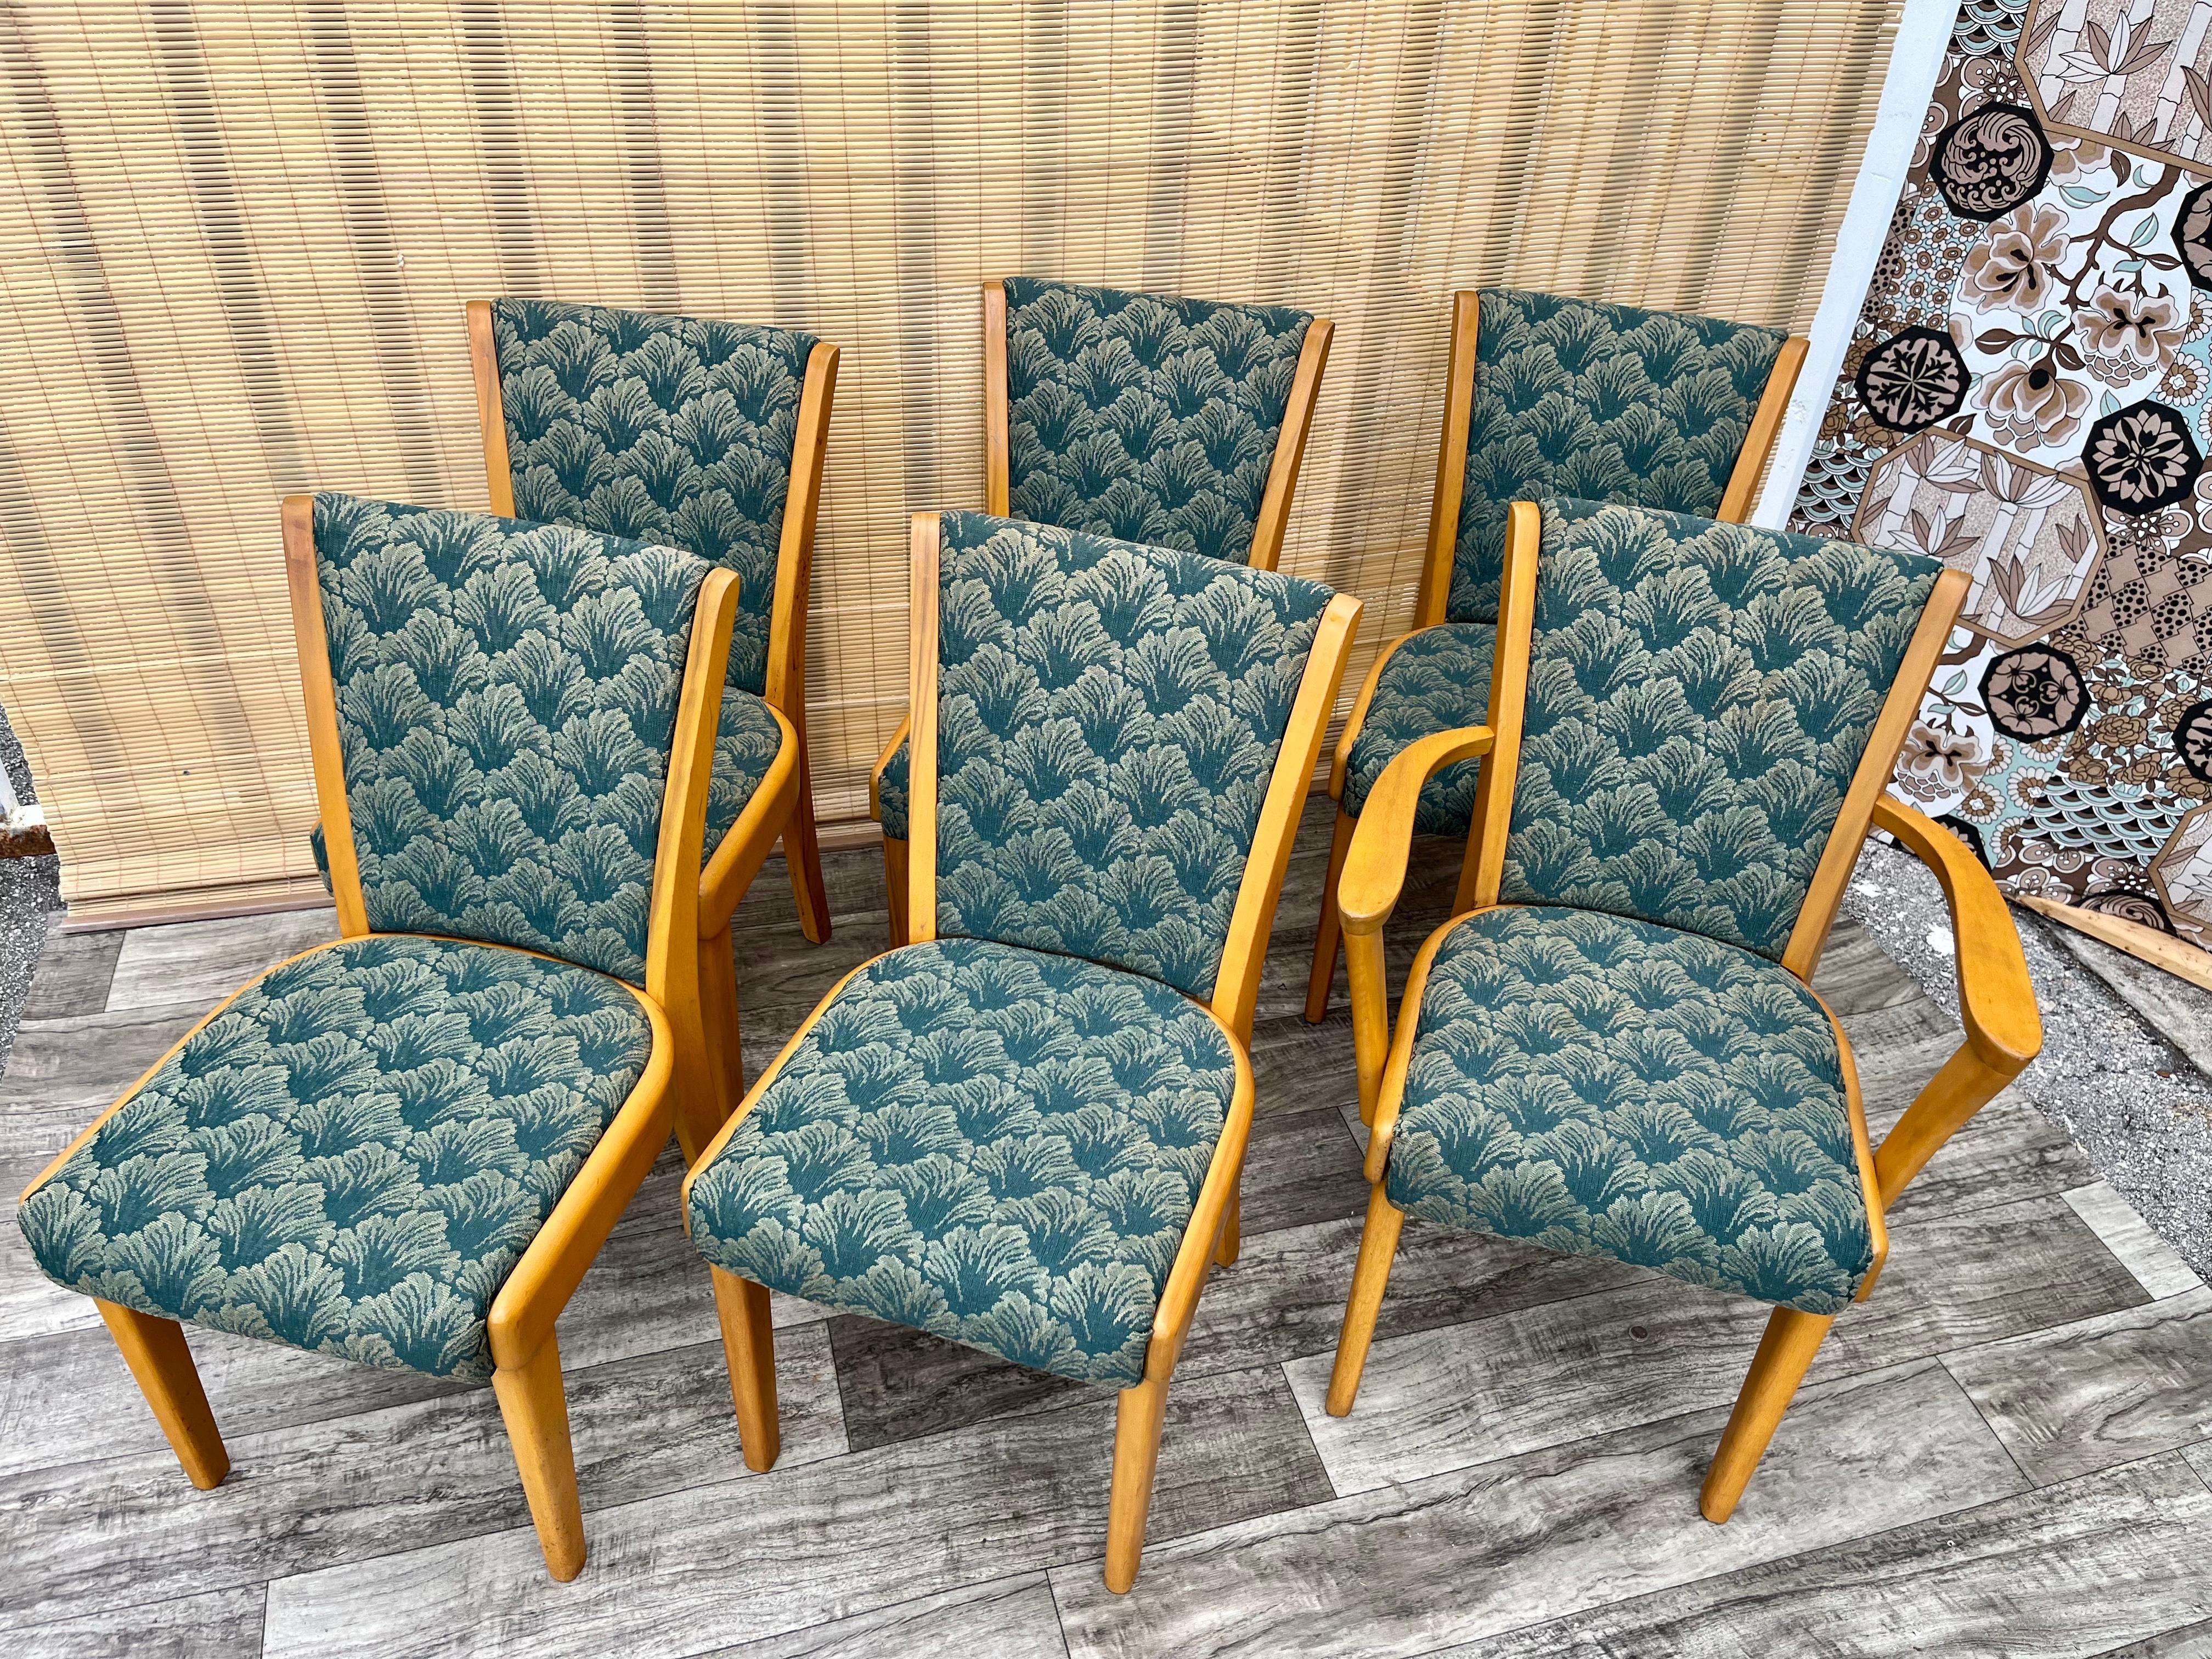 Ensemble de 6 chaises de salle à manger Heywood Wakefield de style moderne du milieu du siècle. Circa 1950s
Cinq chaises d'appoint et une chaise capitaine.  
Bon état solide avec une usure appropriée à l'âge. La sellerie est également en bon état